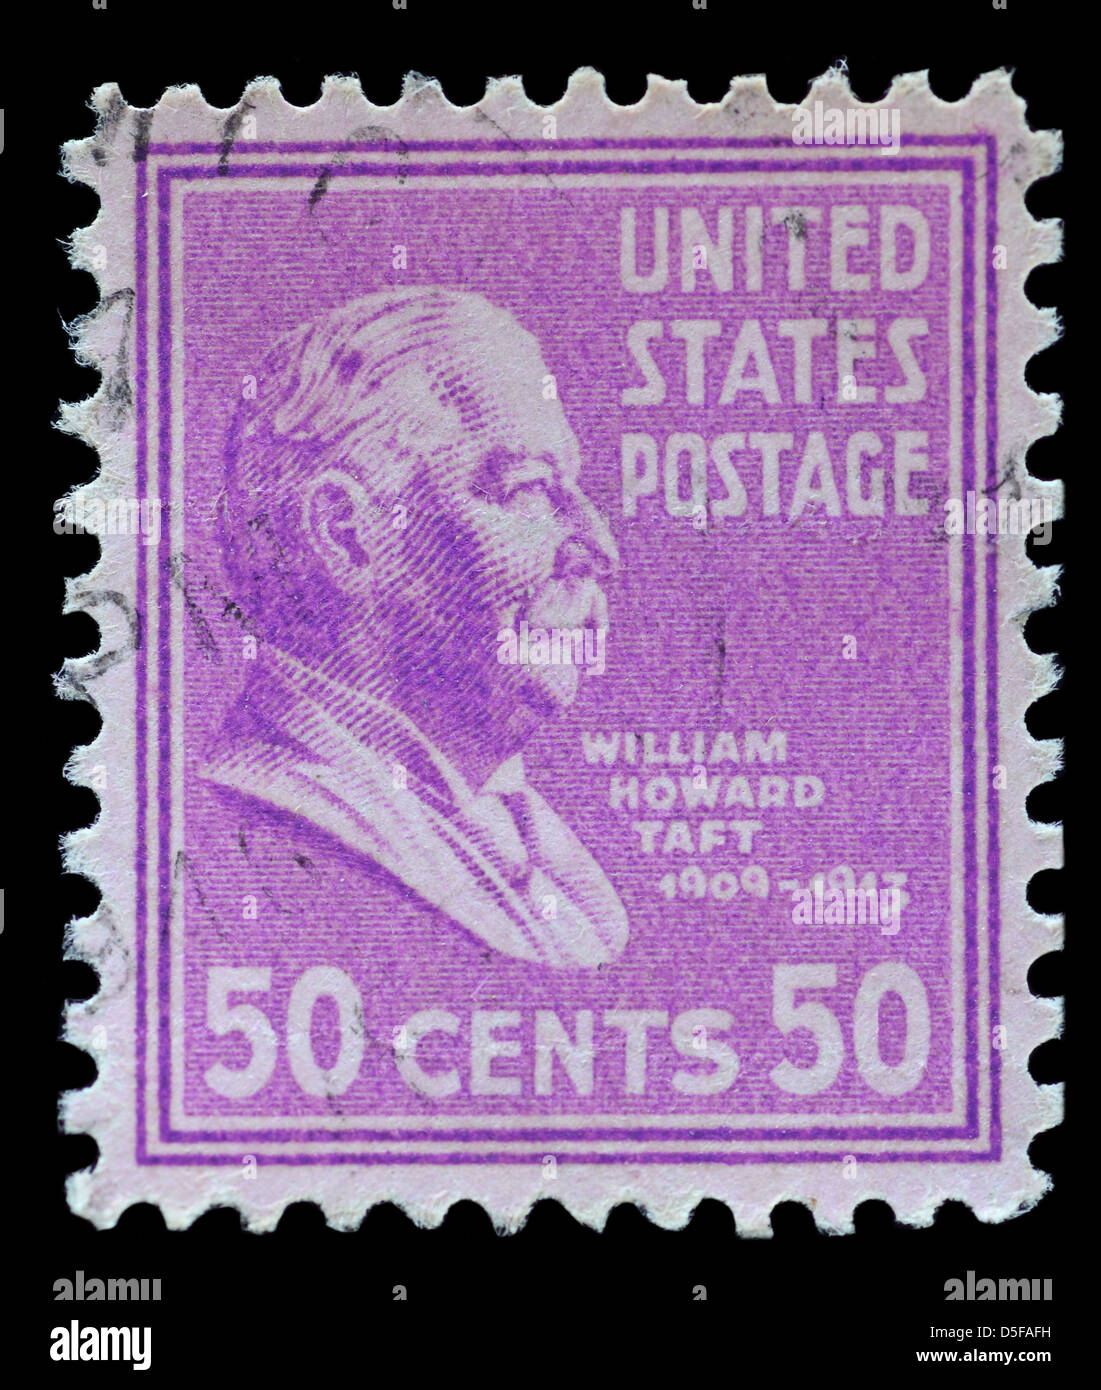 Image de W H Taft, le 27e Président d'Amérique le timbre-poste Banque D'Images